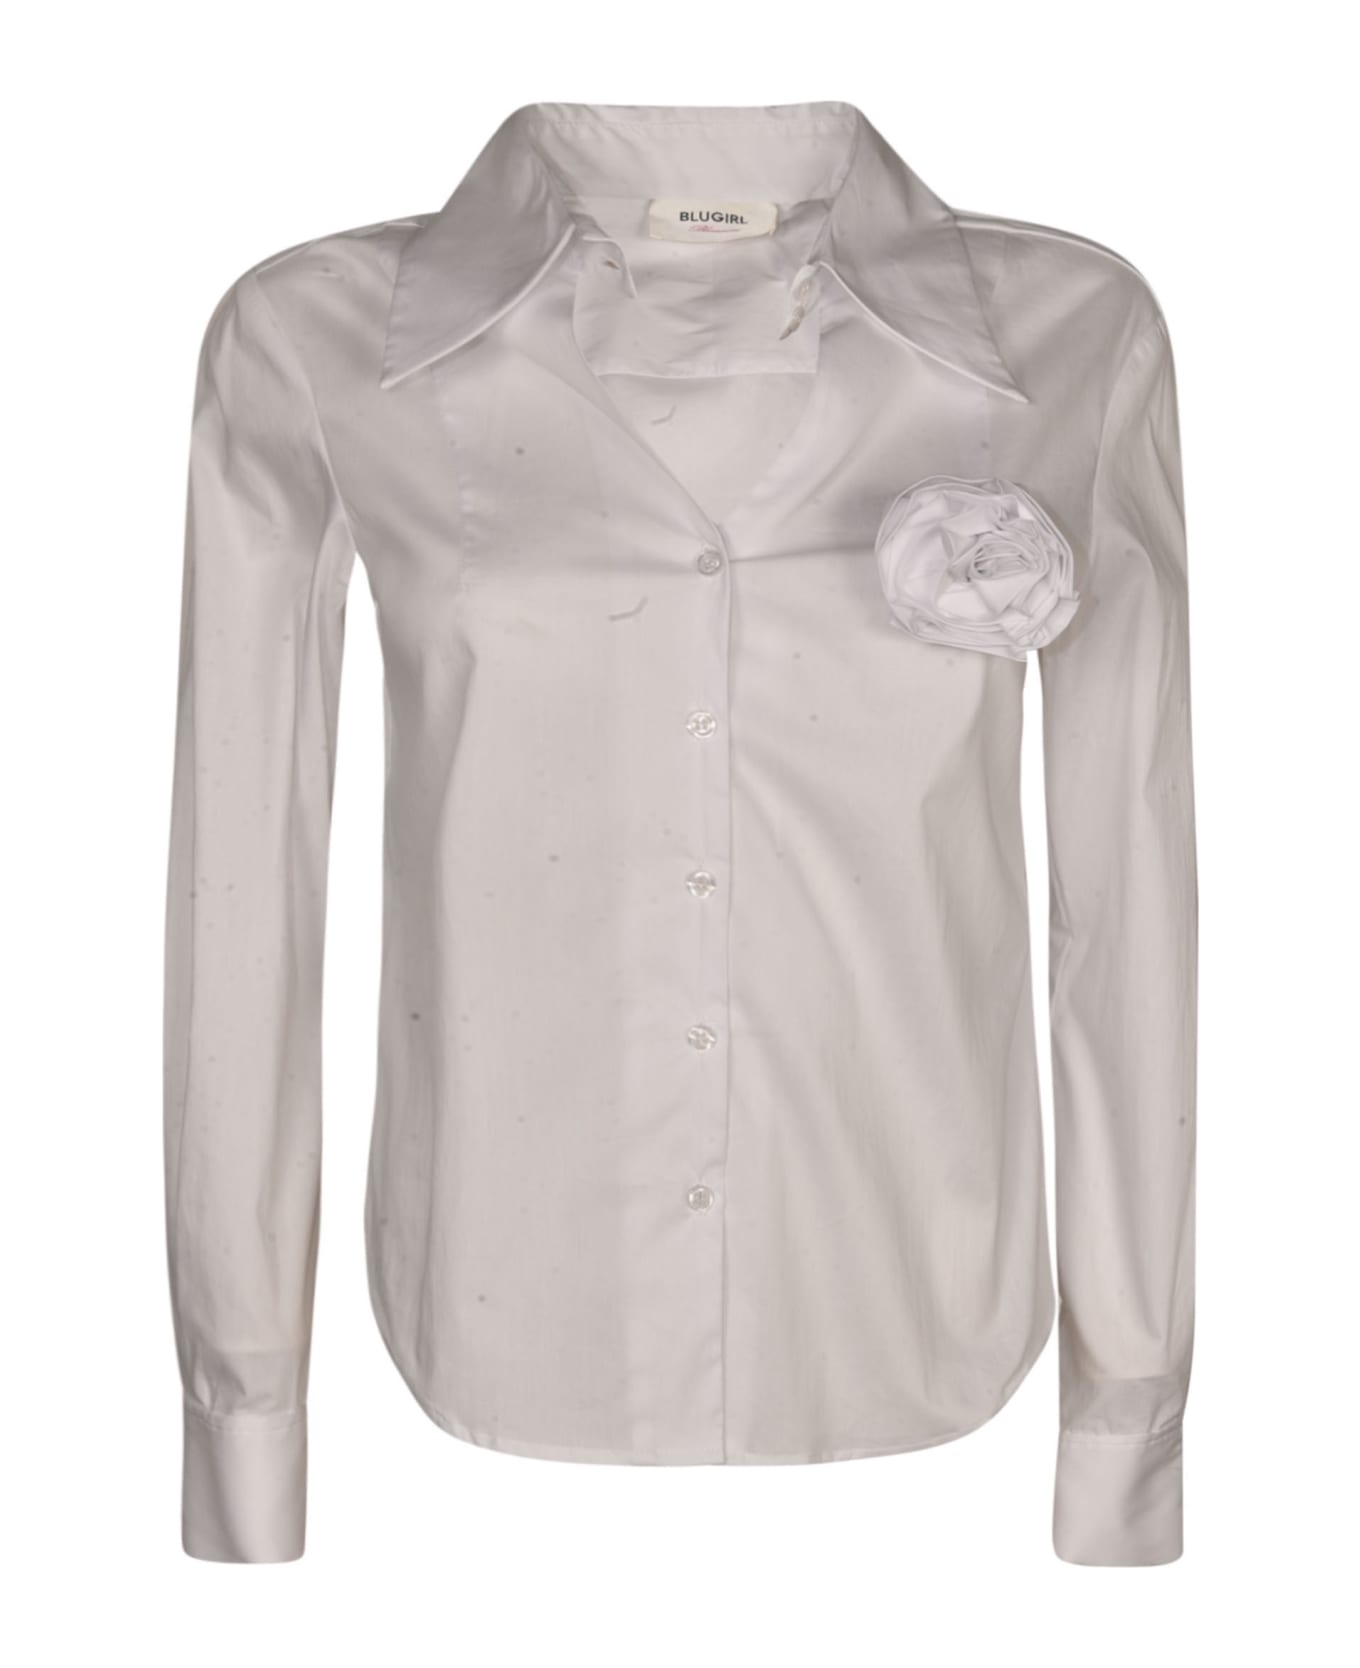 Blugirl Rose Applique Round Hem Shirt - White